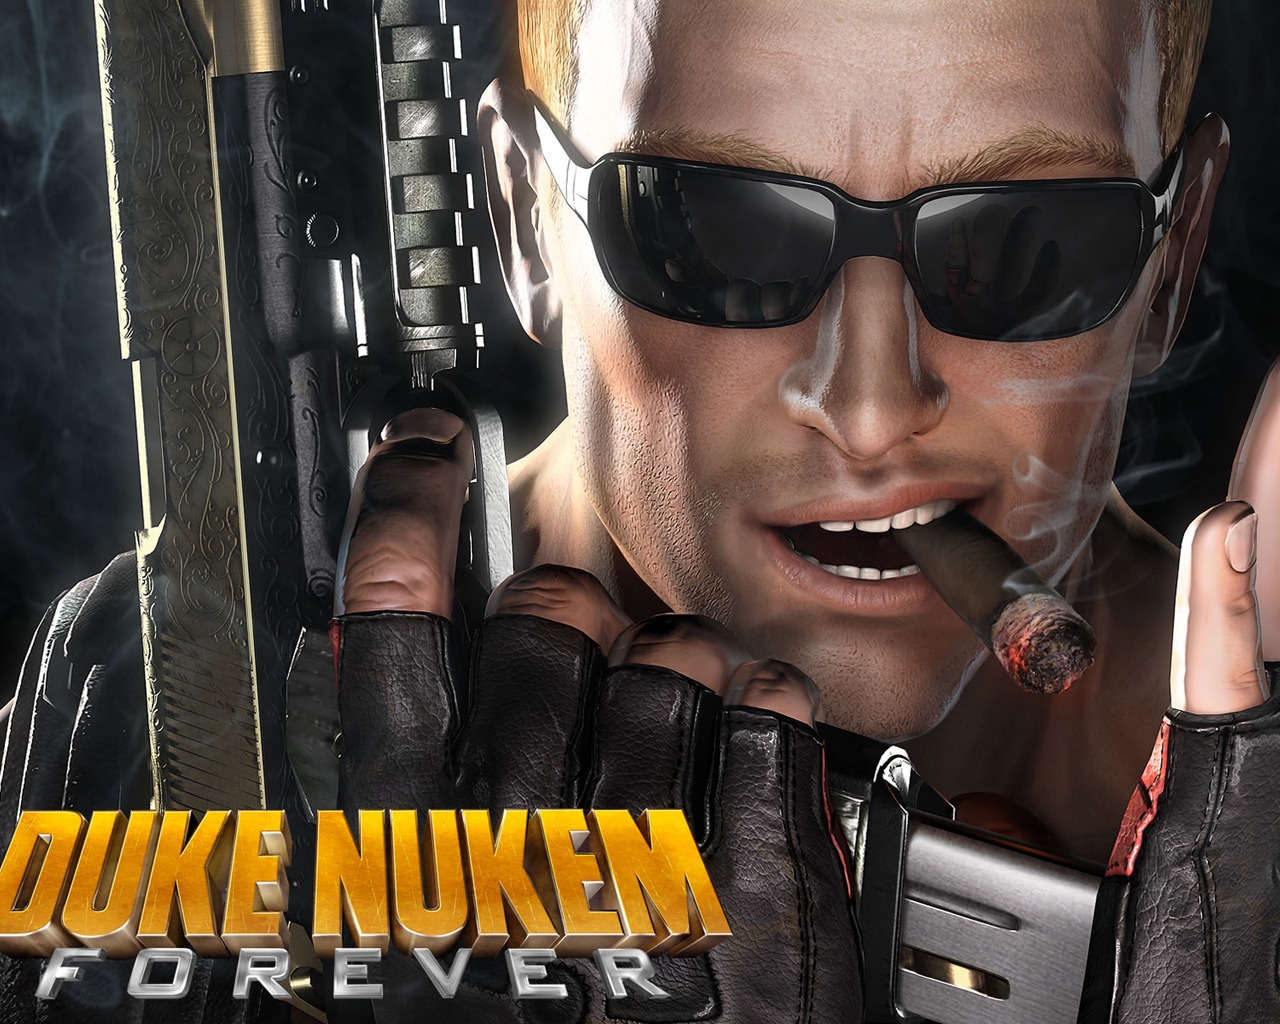 Duke Nukem Forever for 1280 x 1024 resolution